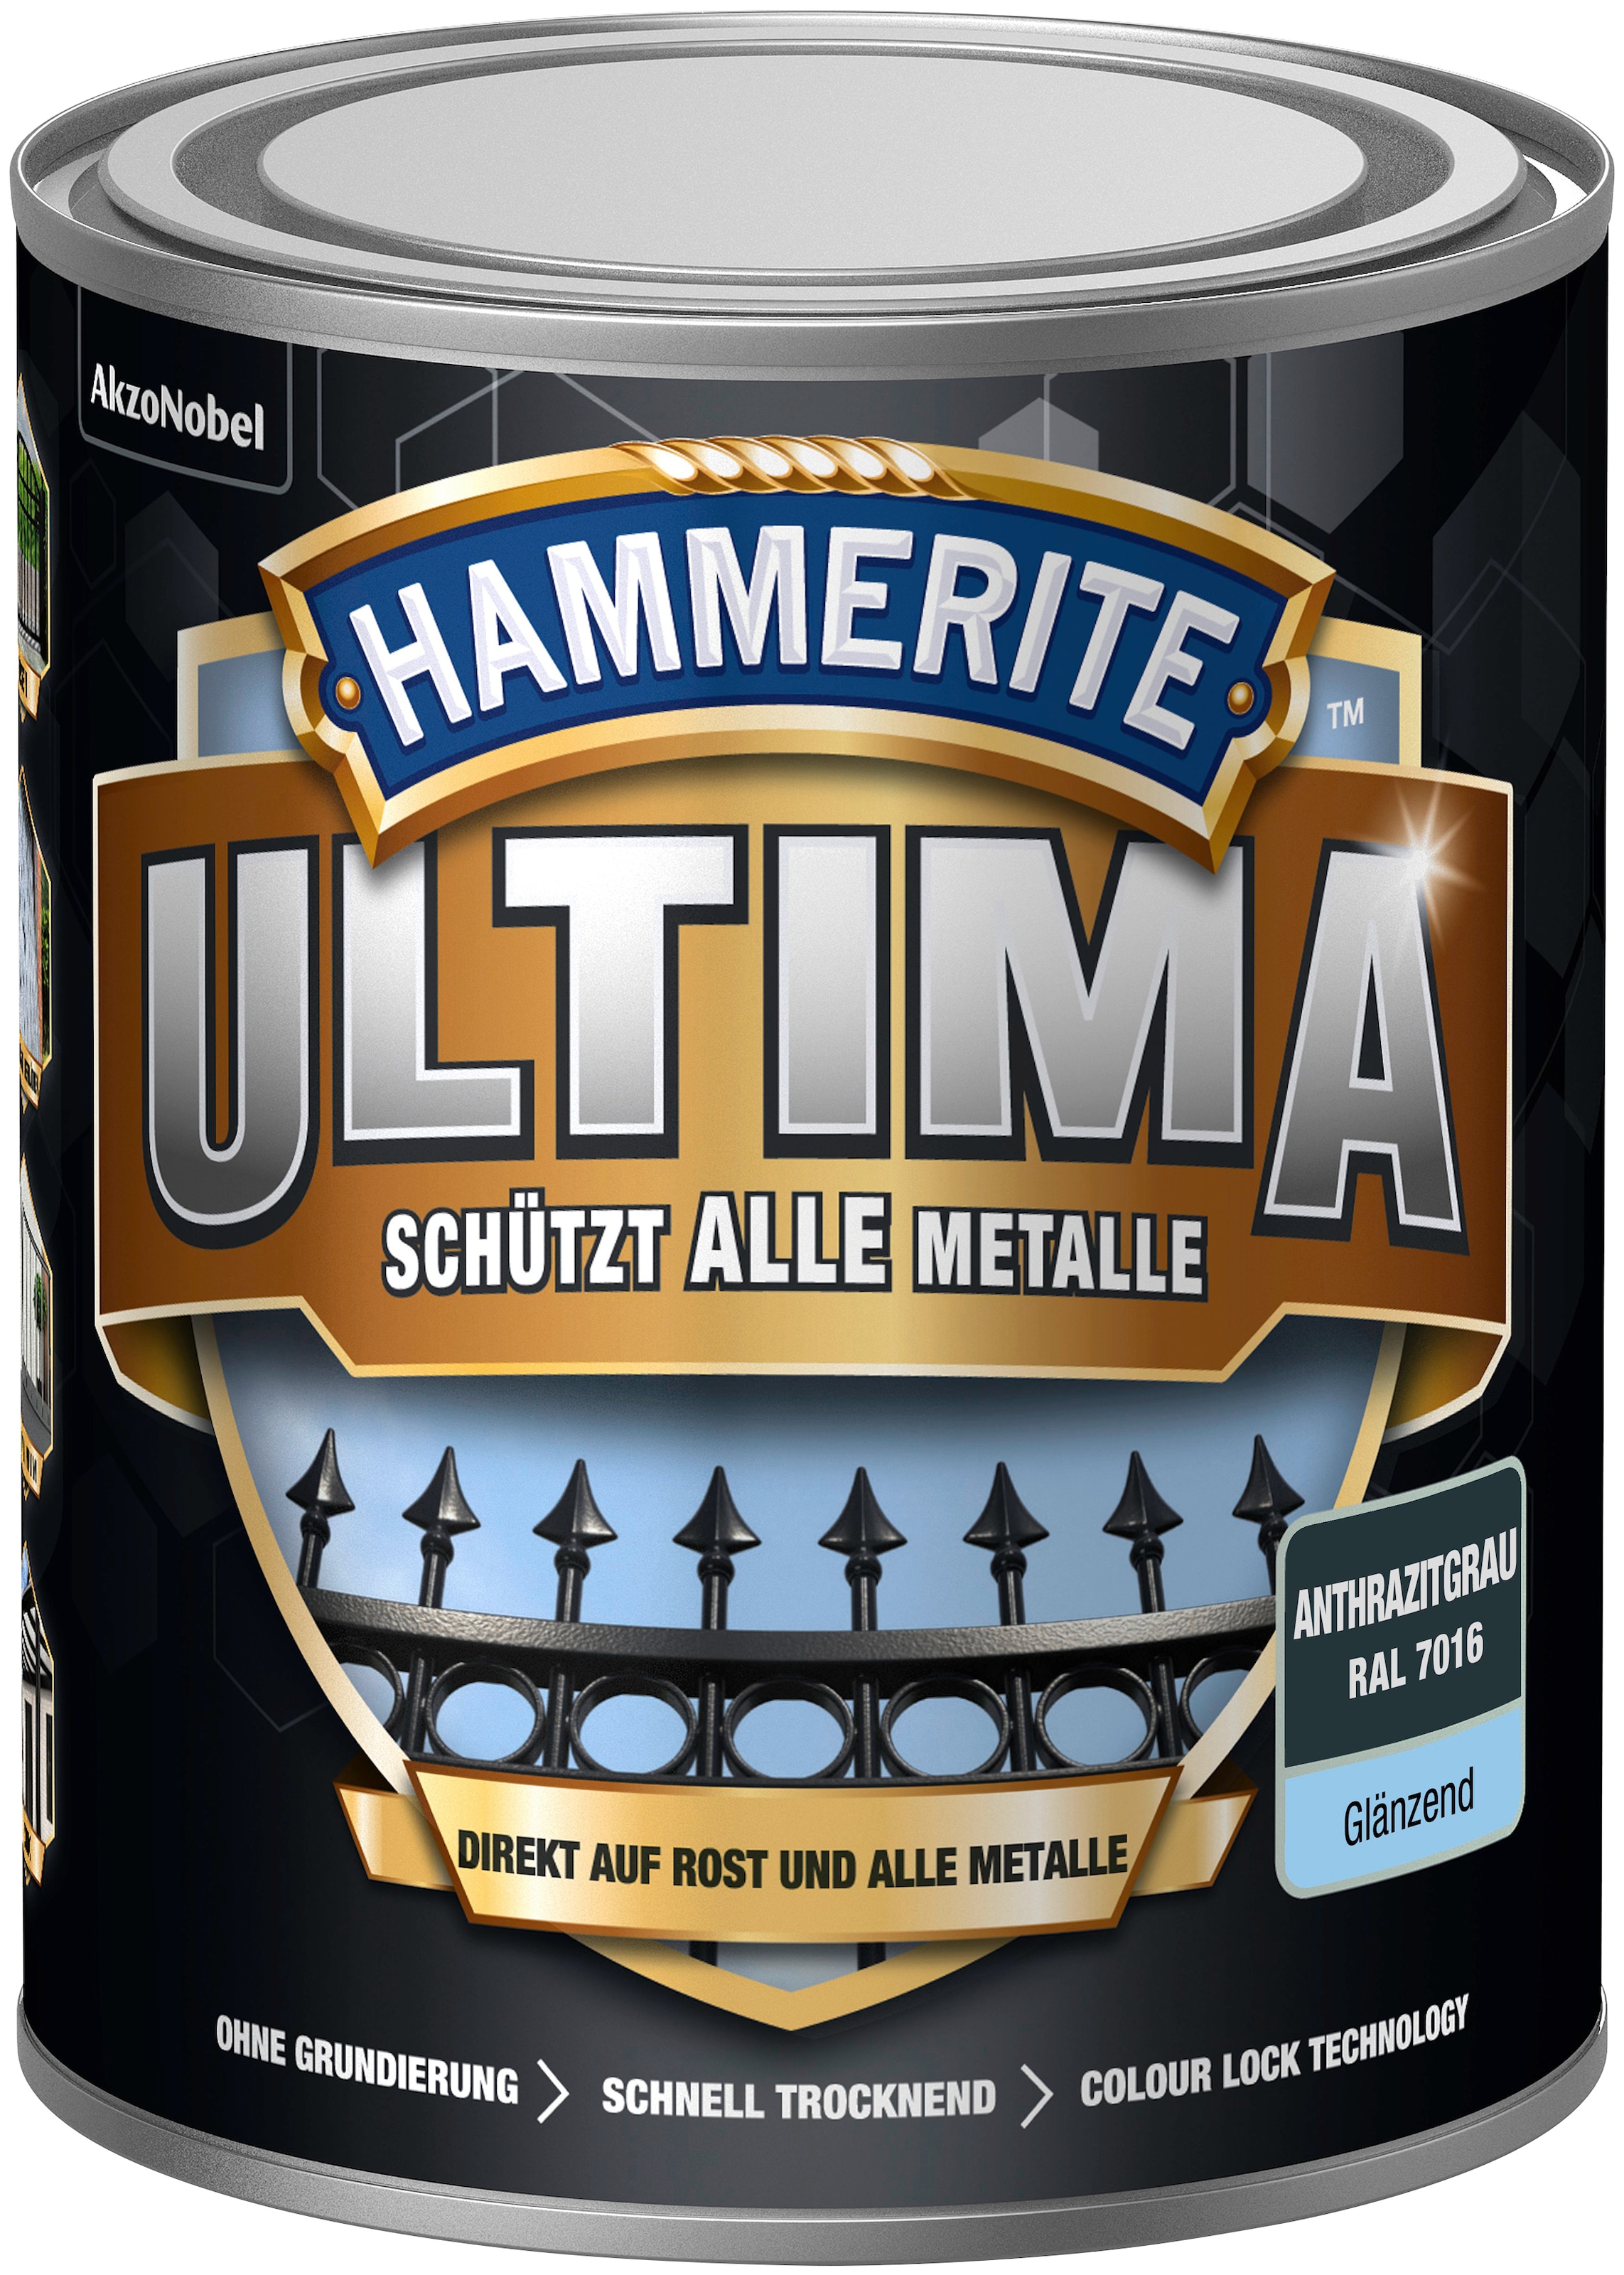 Hammerite Metallschutzlack bei glänzend anthrazitgrau OTTO kaufen RAL 3in1, »ULTIMA«, 7016